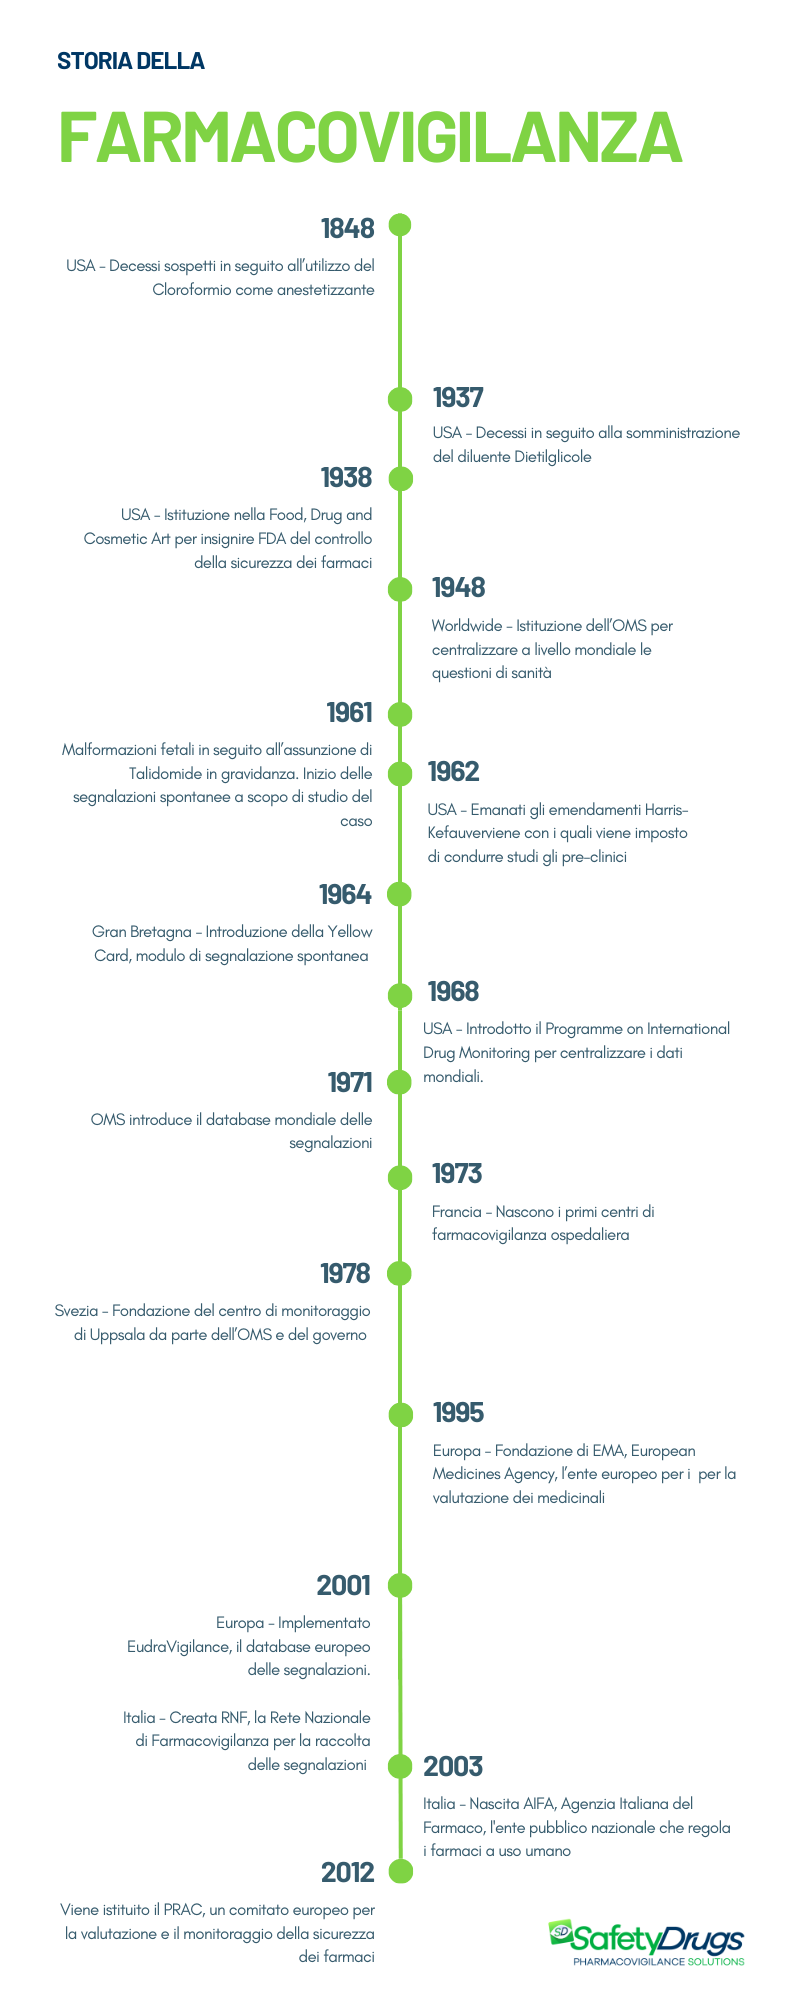 Storia della farmacovigilanza - Timeline